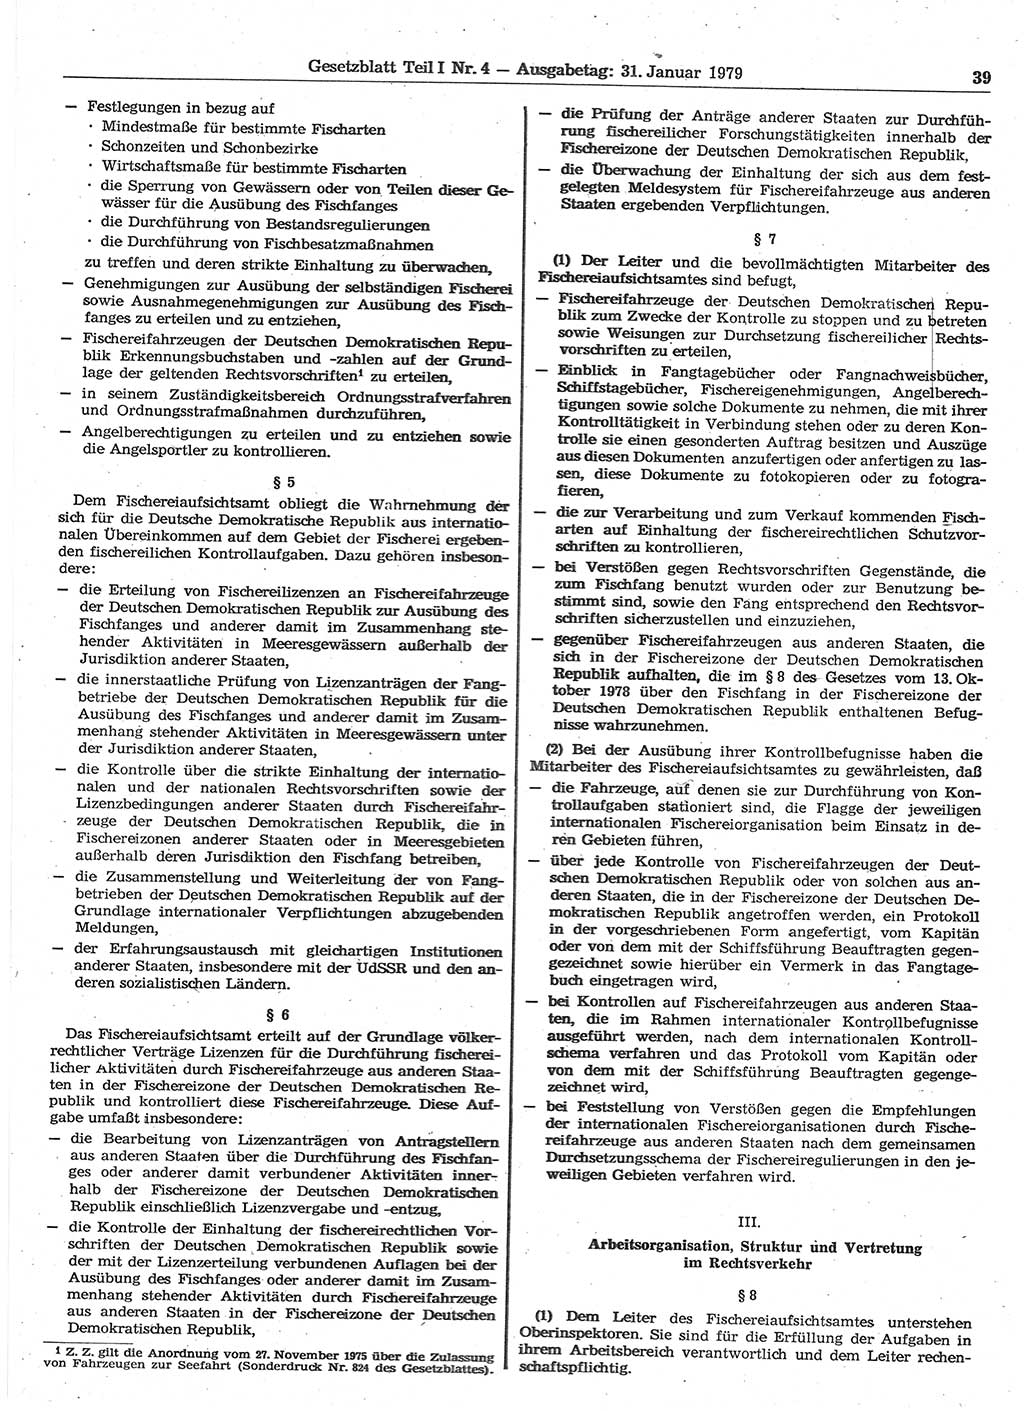 Gesetzblatt (GBl.) der Deutschen Demokratischen Republik (DDR) Teil Ⅰ 1979, Seite 39 (GBl. DDR Ⅰ 1979, S. 39)